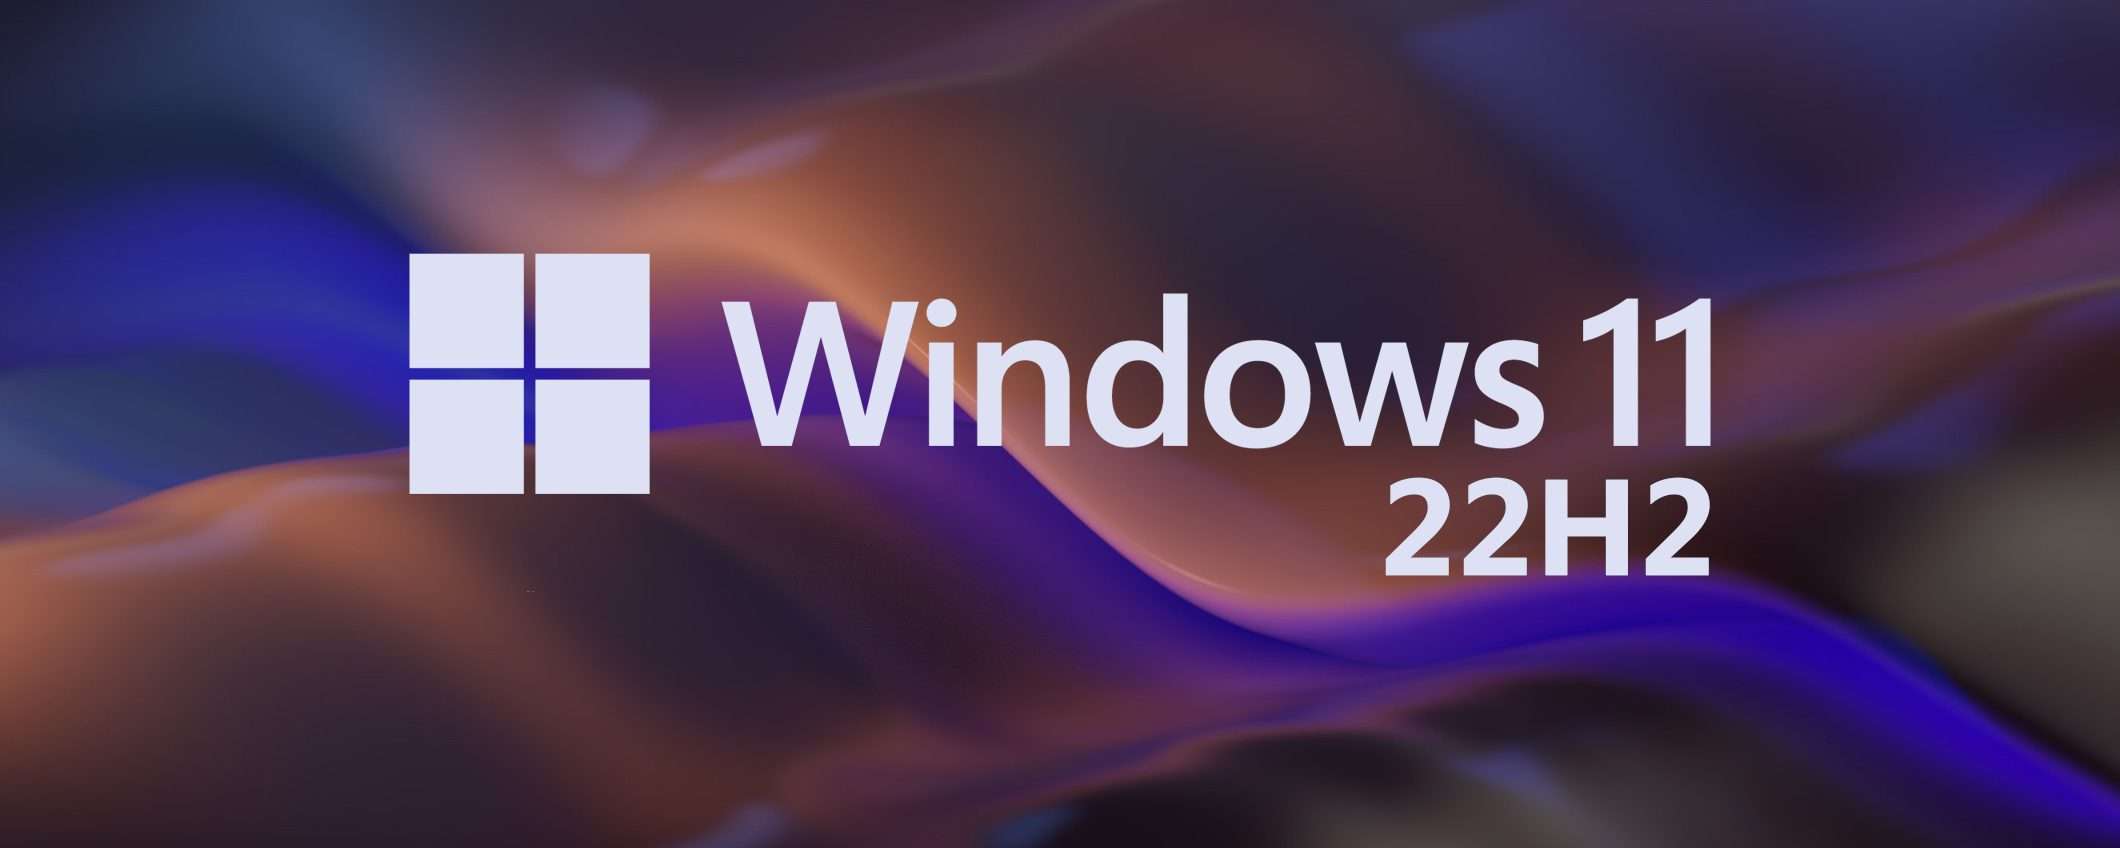 Windows 11 22H2: controlla se il tuo PC è pronto